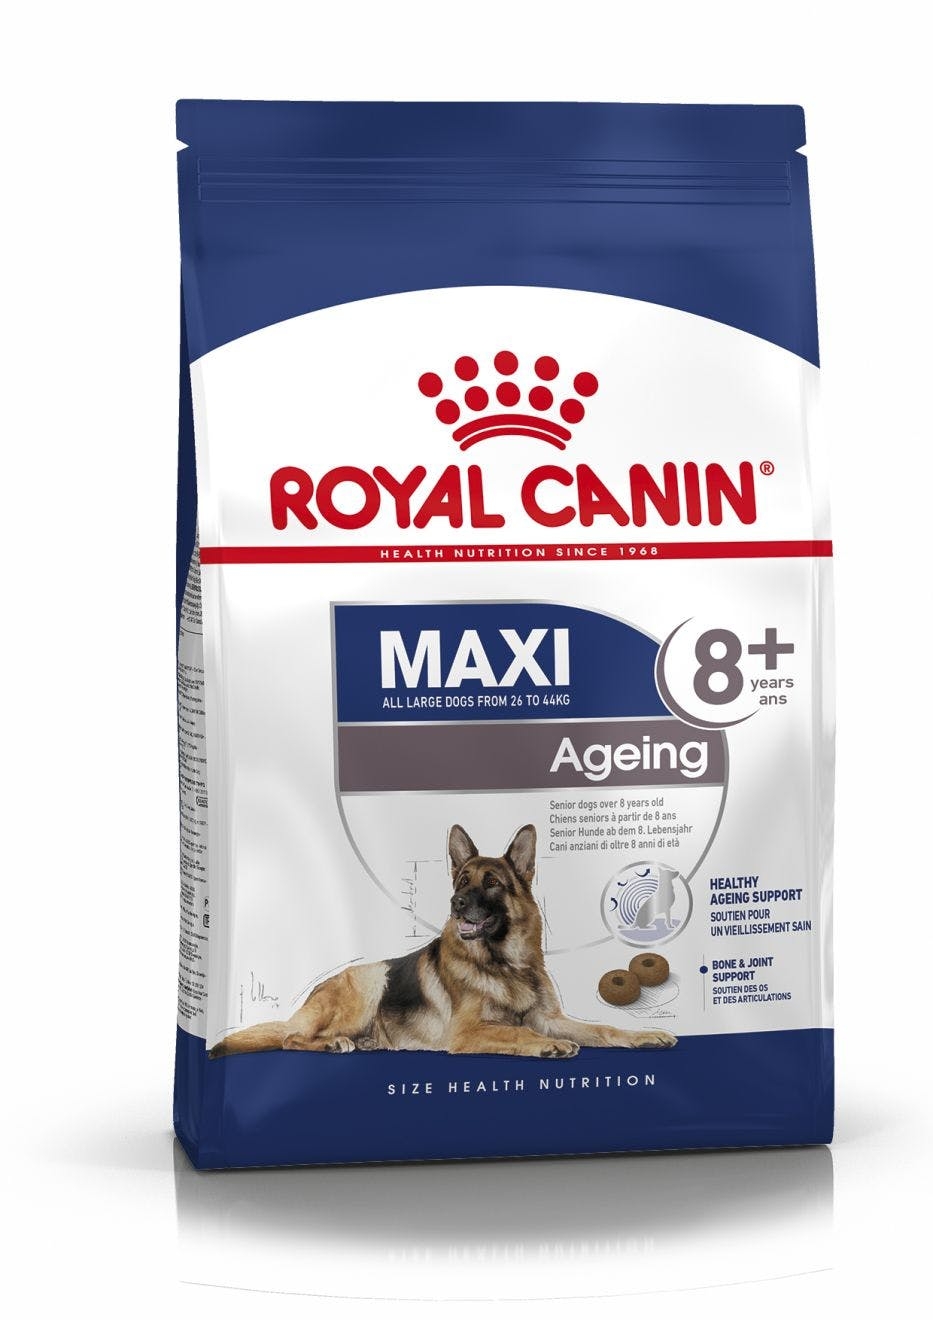 Billede af Royal Canin Maxi Ageing 8+. Hunde over 8 år. 26-44kg. (15kg.)